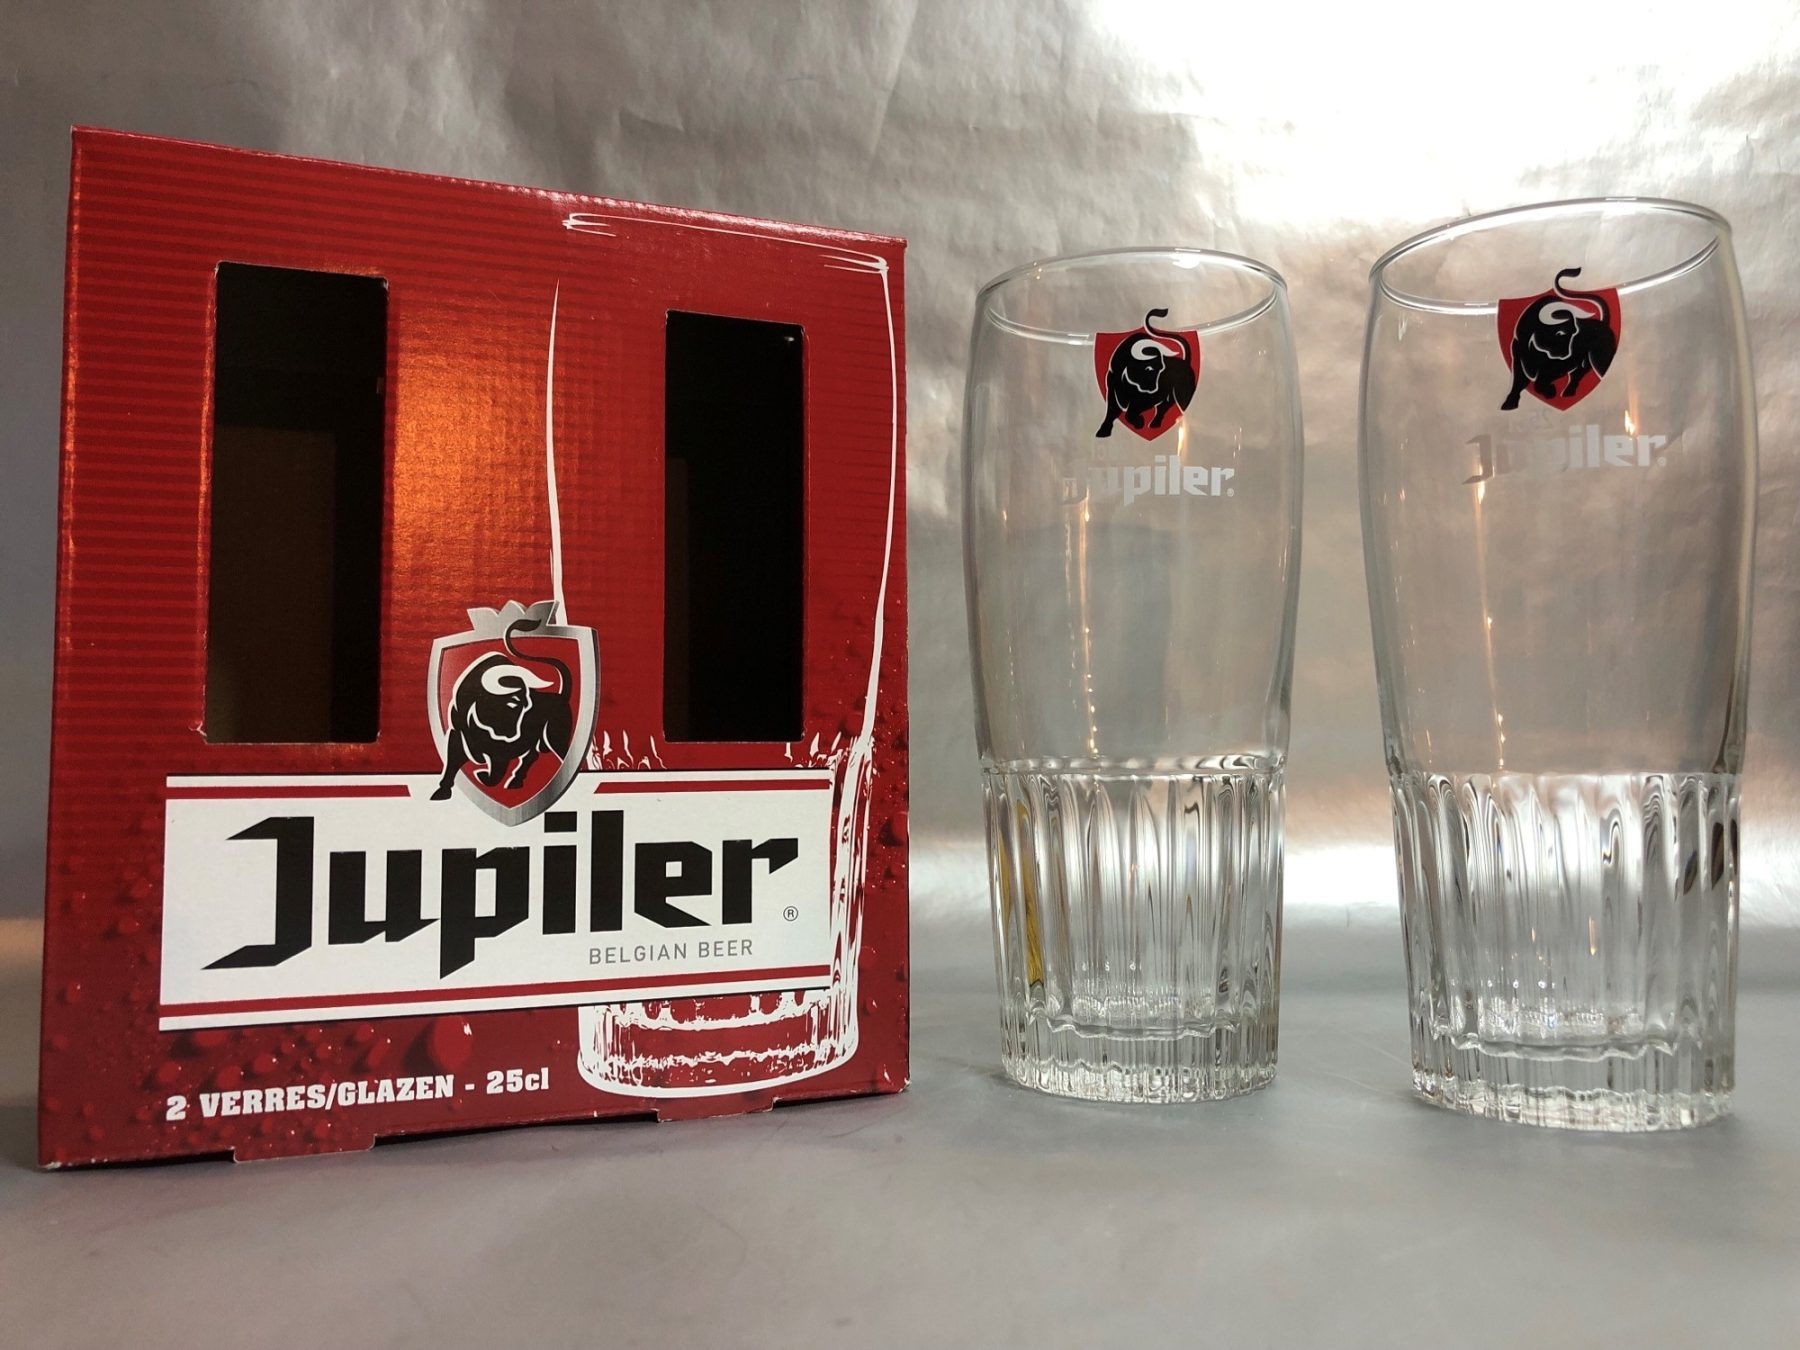 Jupiler beer glass duo pack